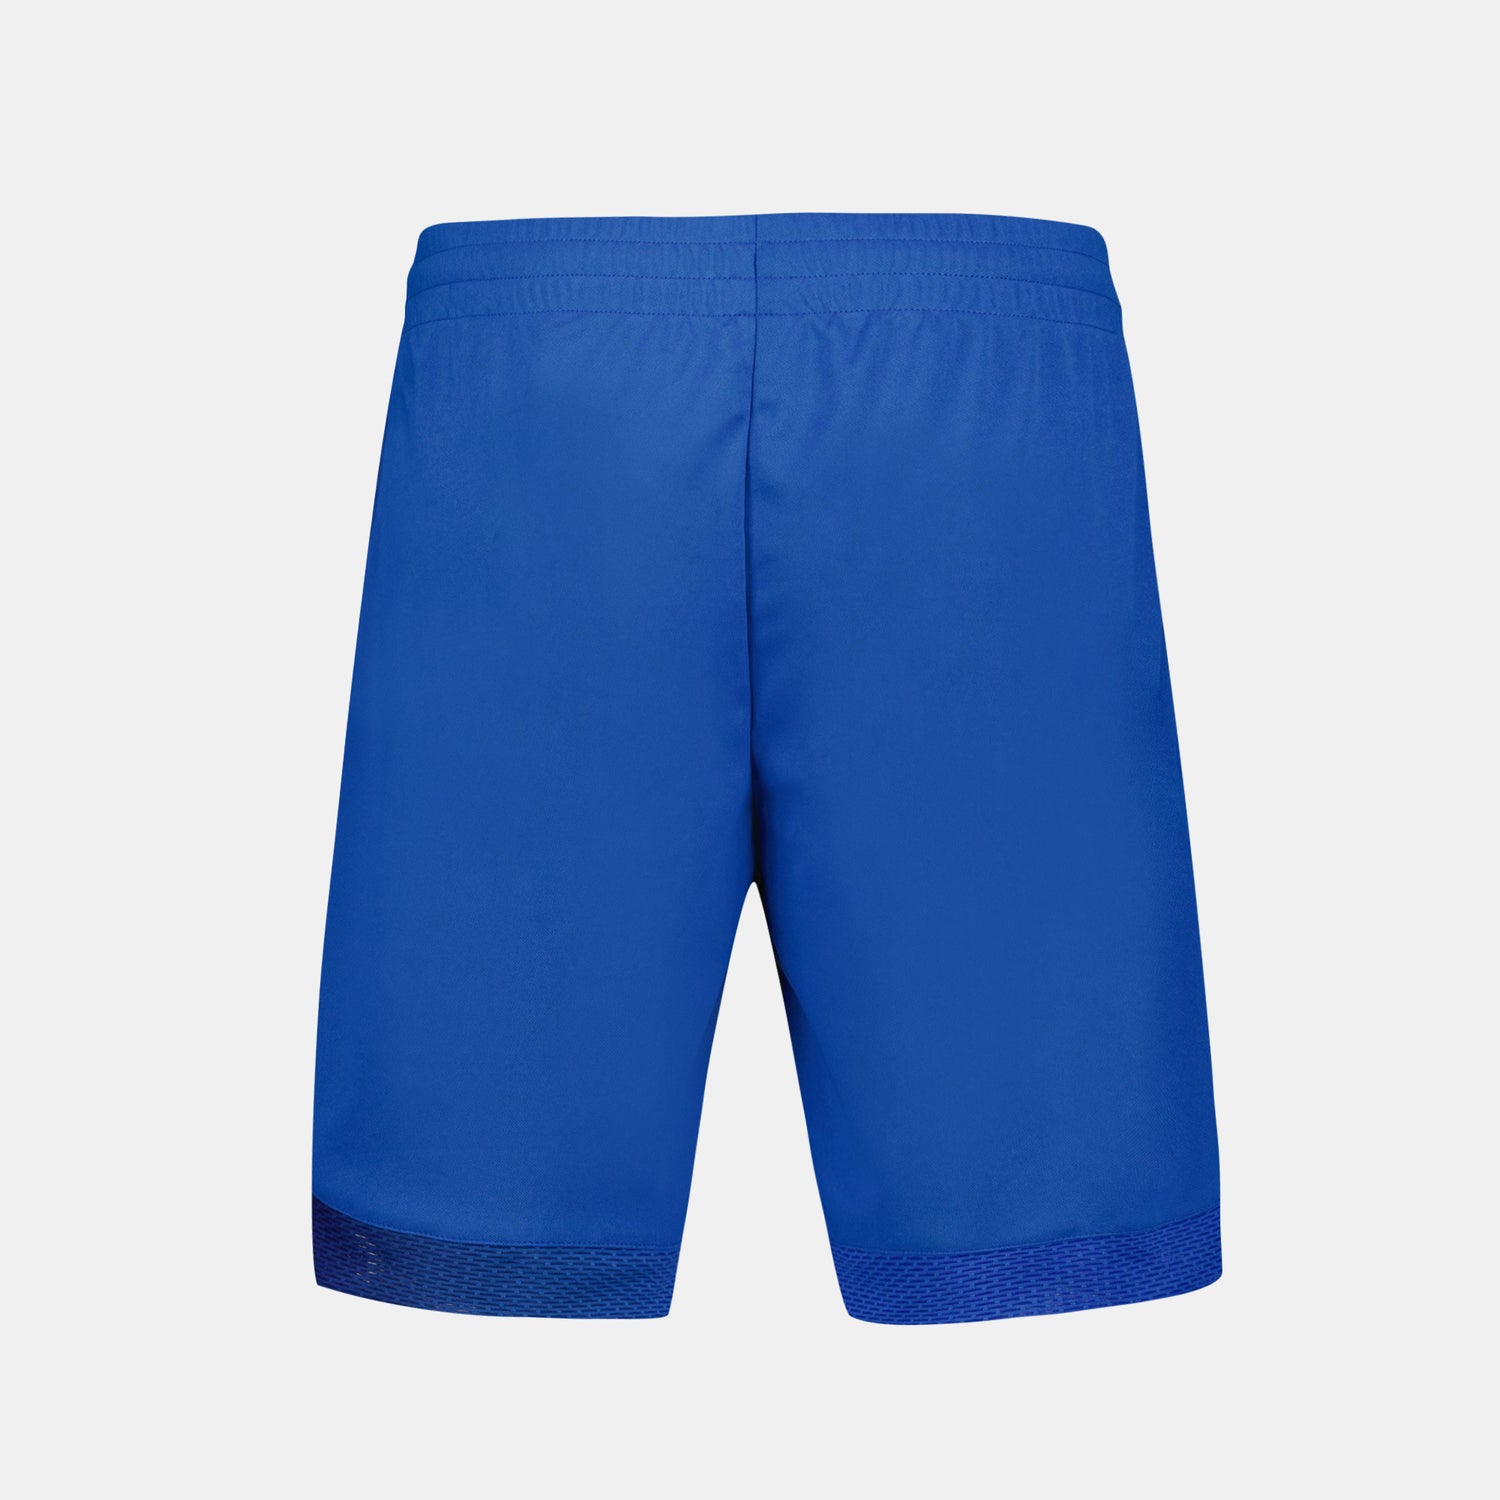 2410521-TENNIS PRO Short 24 N°1 M lapis blue  | Pantaloncini Uomo